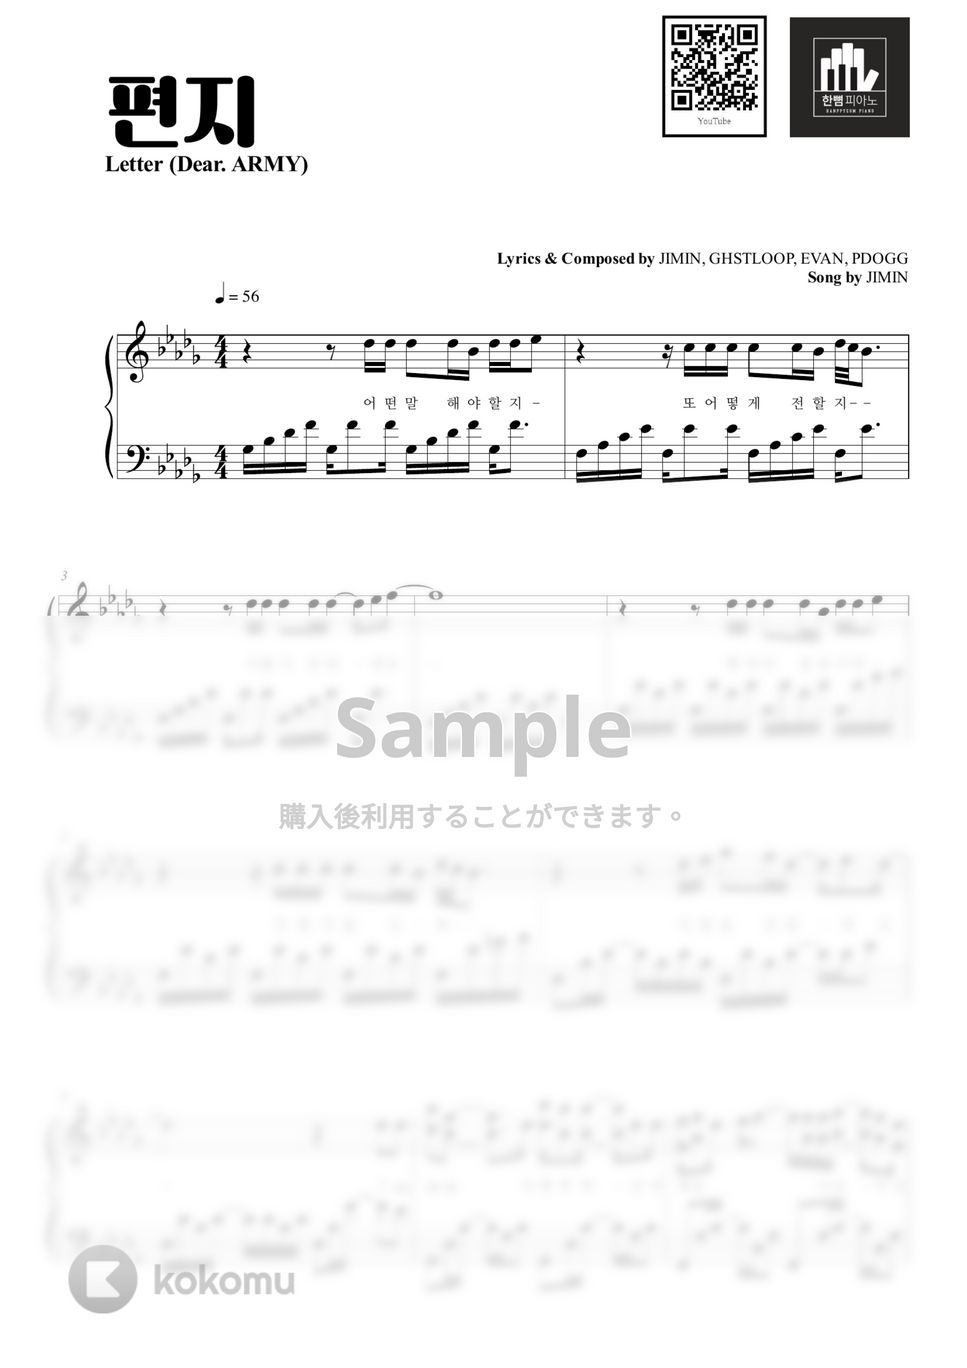 Jimin - Letter (Dear. ARMY) (PIANO COVER) by HANPPYEOMPIANO